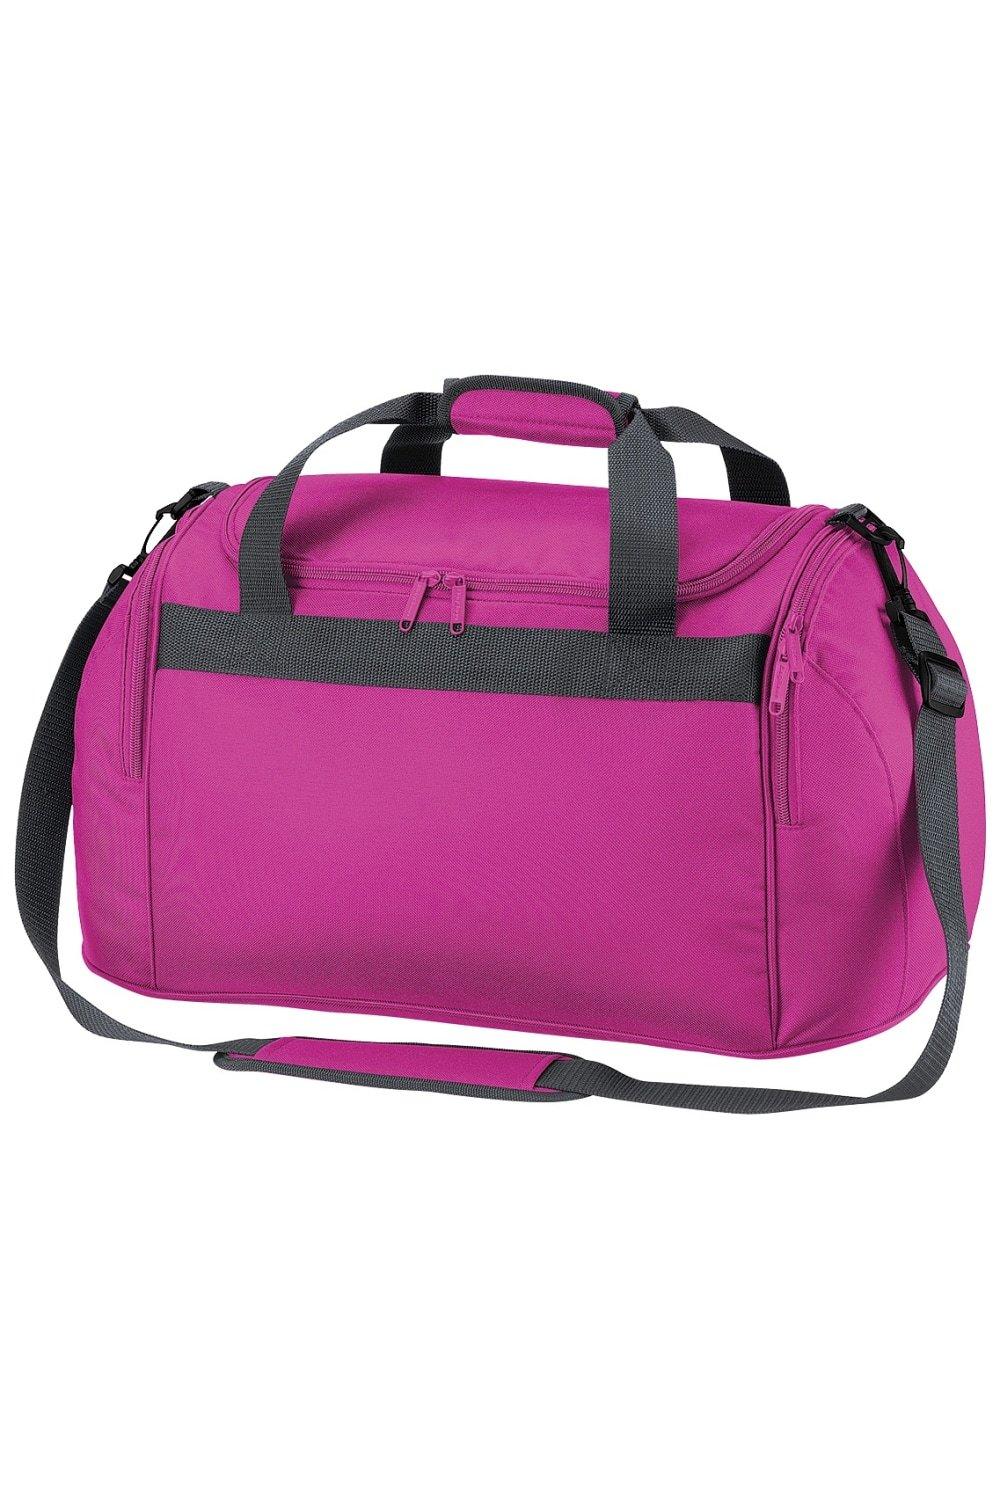 Дорожная сумка для фристайла/спортивная сумка (26 литров) (2 шт. в упаковке) Bagbase, розовый